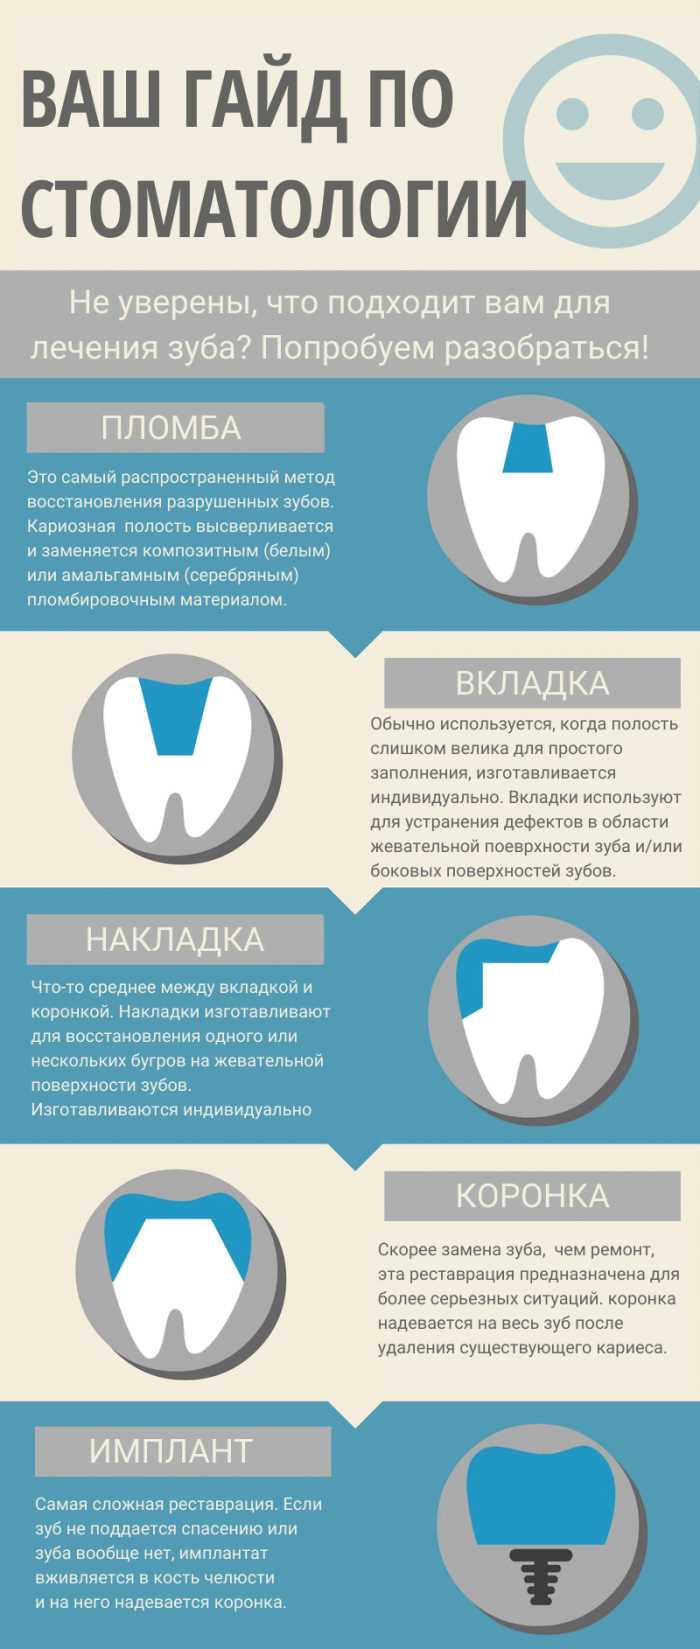 Отличие пломбирования от реставрации зуба